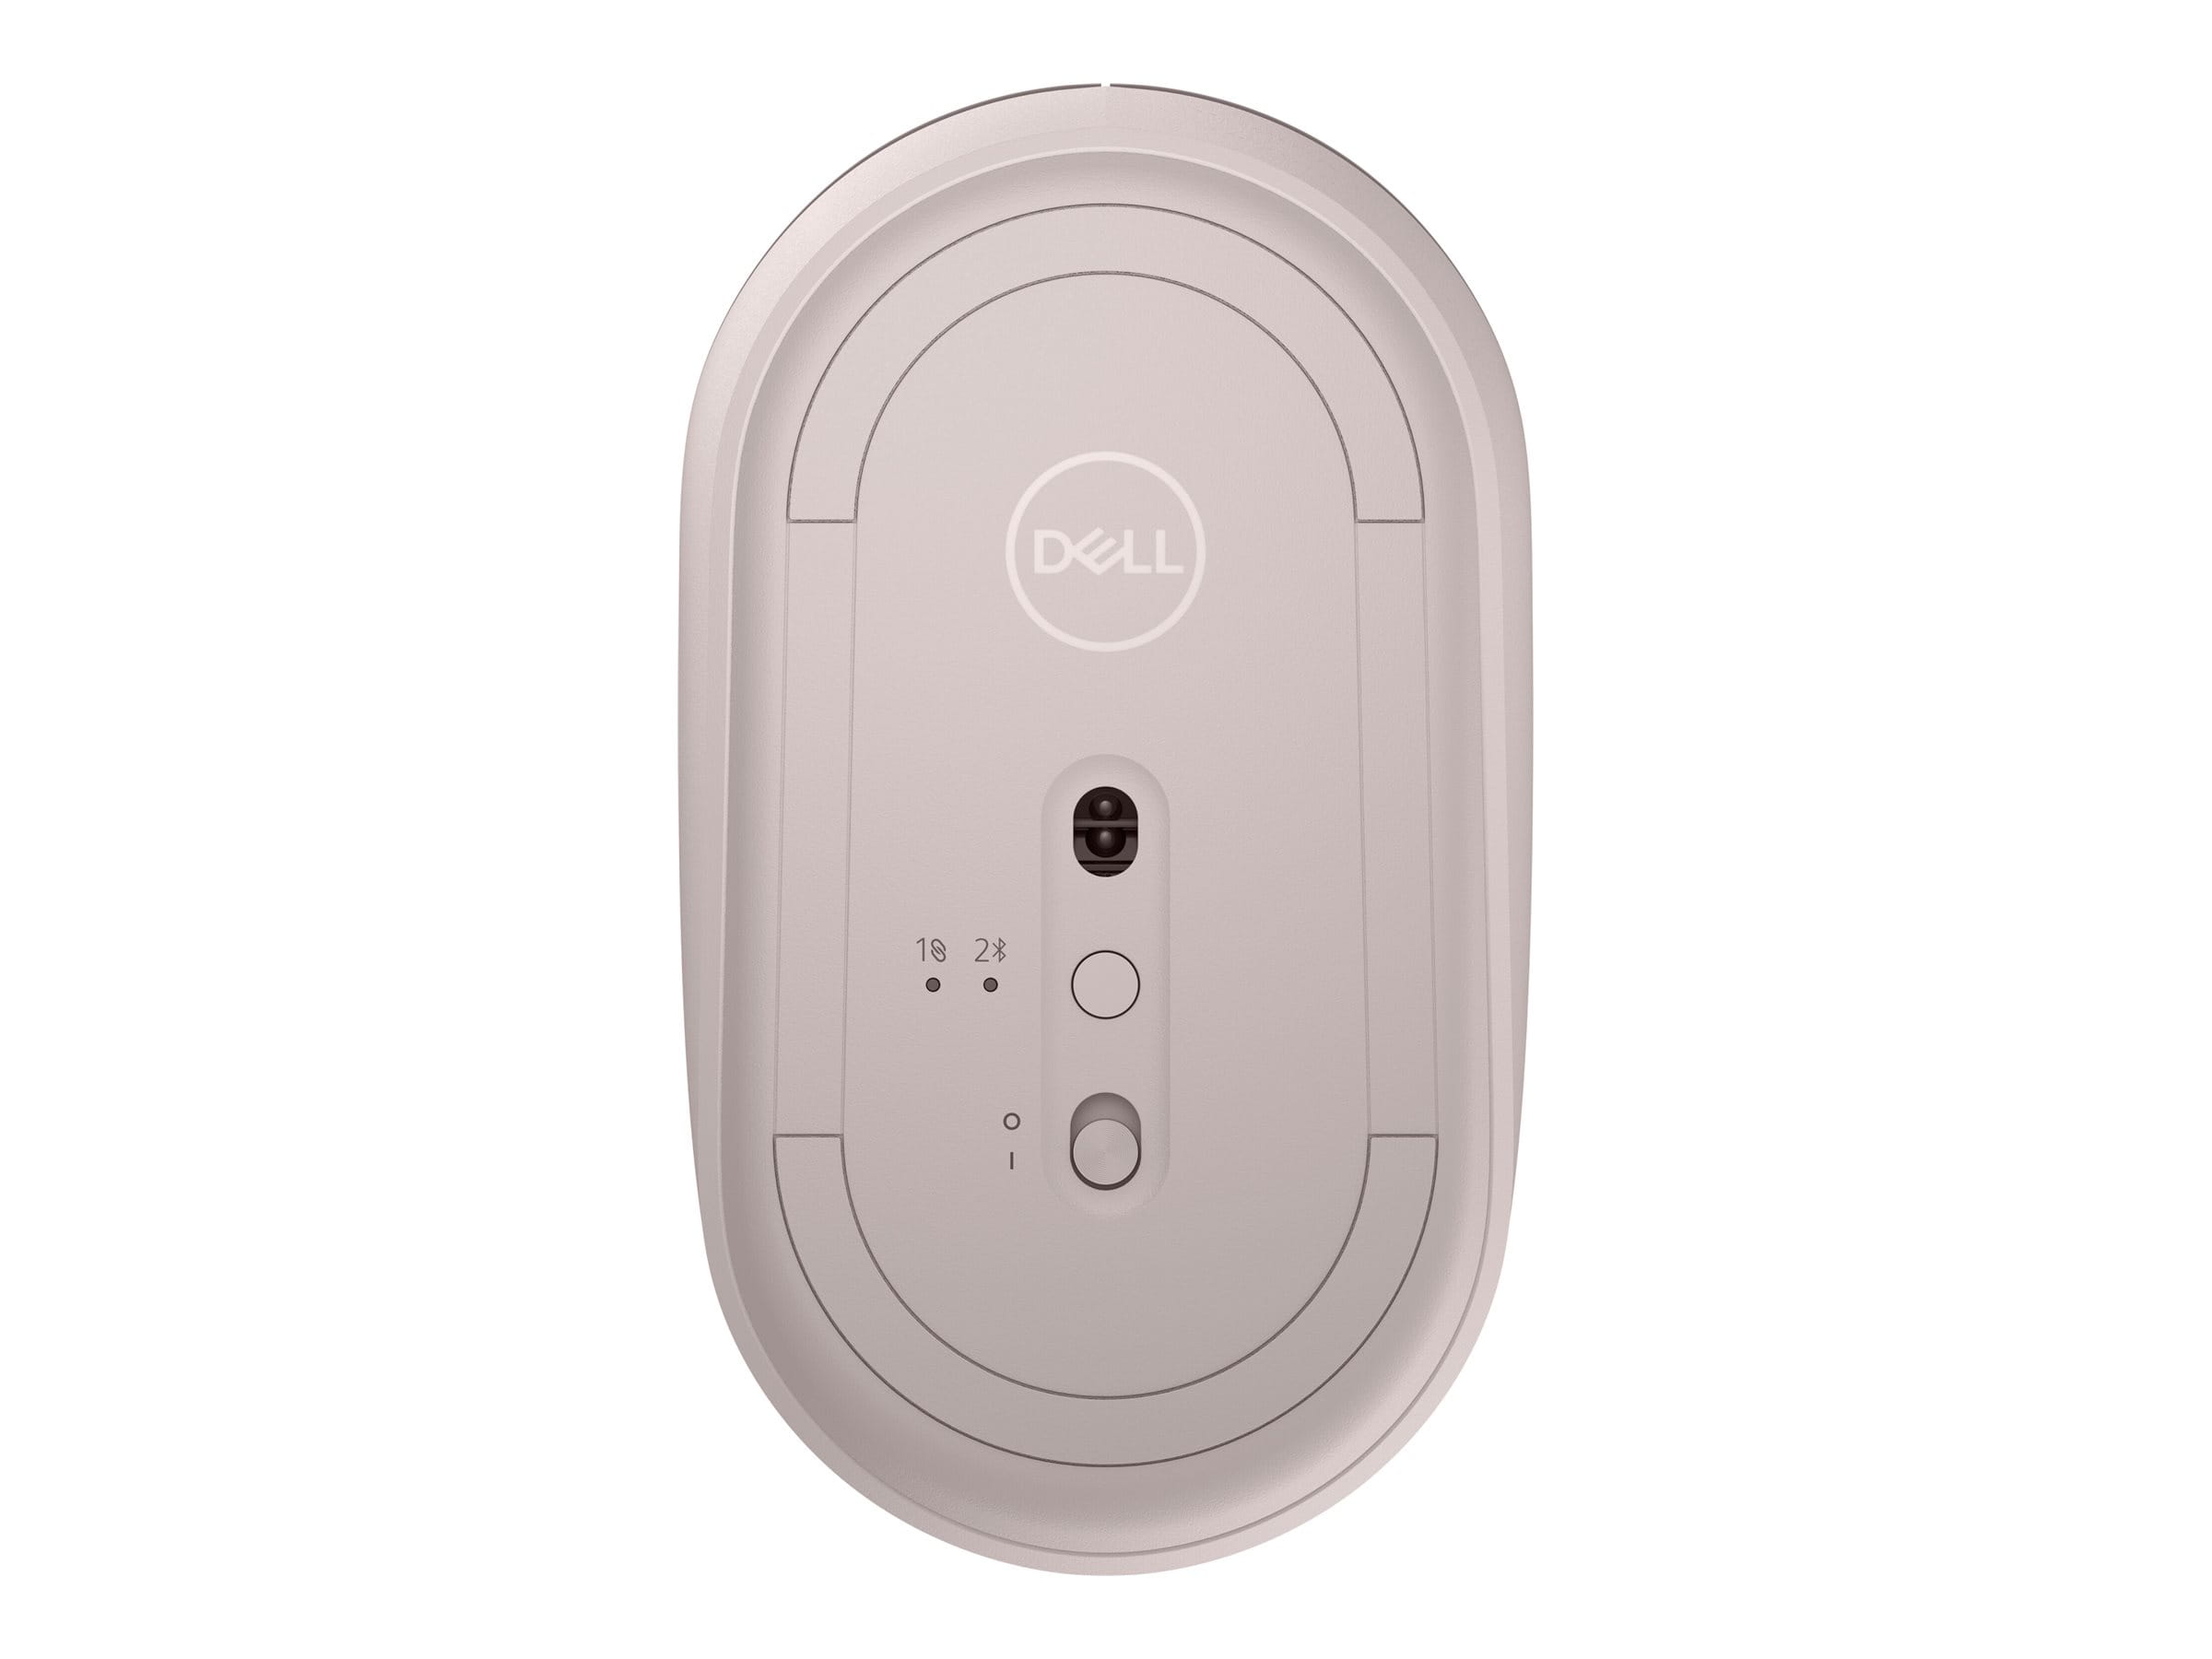 Dell MS3320W - Maus - optische LED - 3 Tasten - kabellos - 2.4 GHz, Bluetooth 5.0 - kabelloser Empfänger (USB)